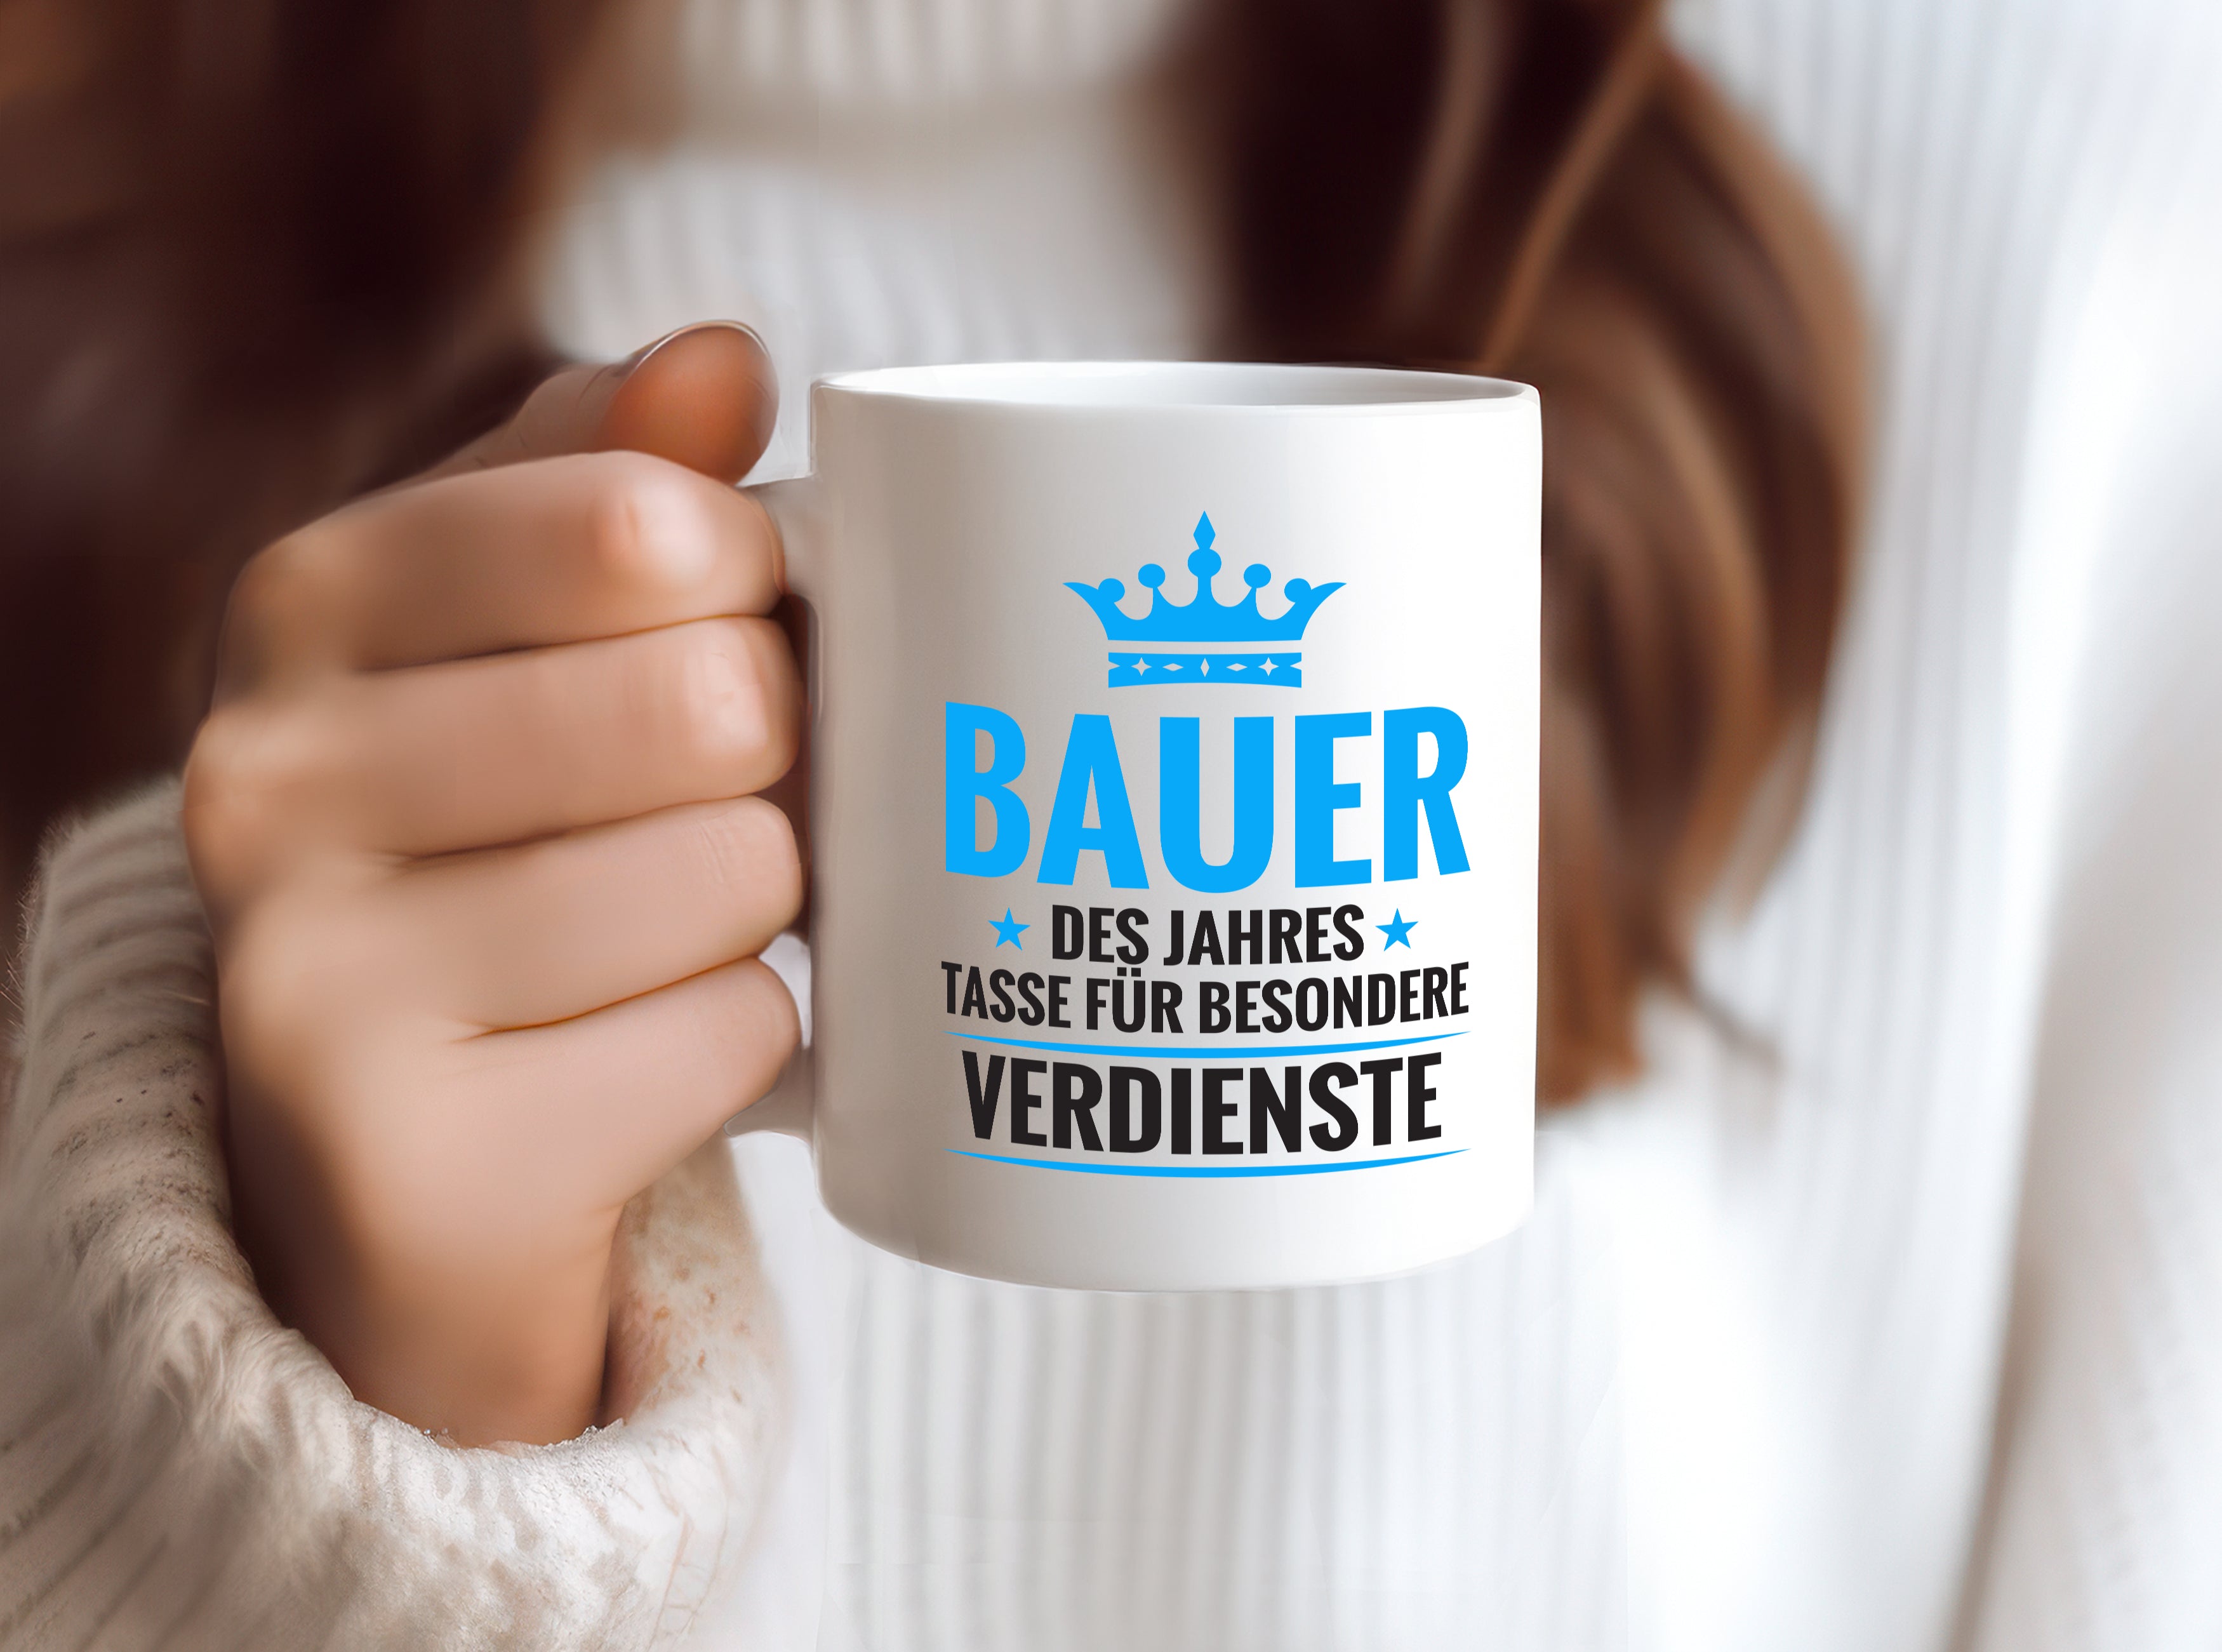 Besonderer Verdienst: Bauer | Bauernhof | Landwirtschaft - Tasse Weiß - Kaffeetasse / Geschenk / Familie